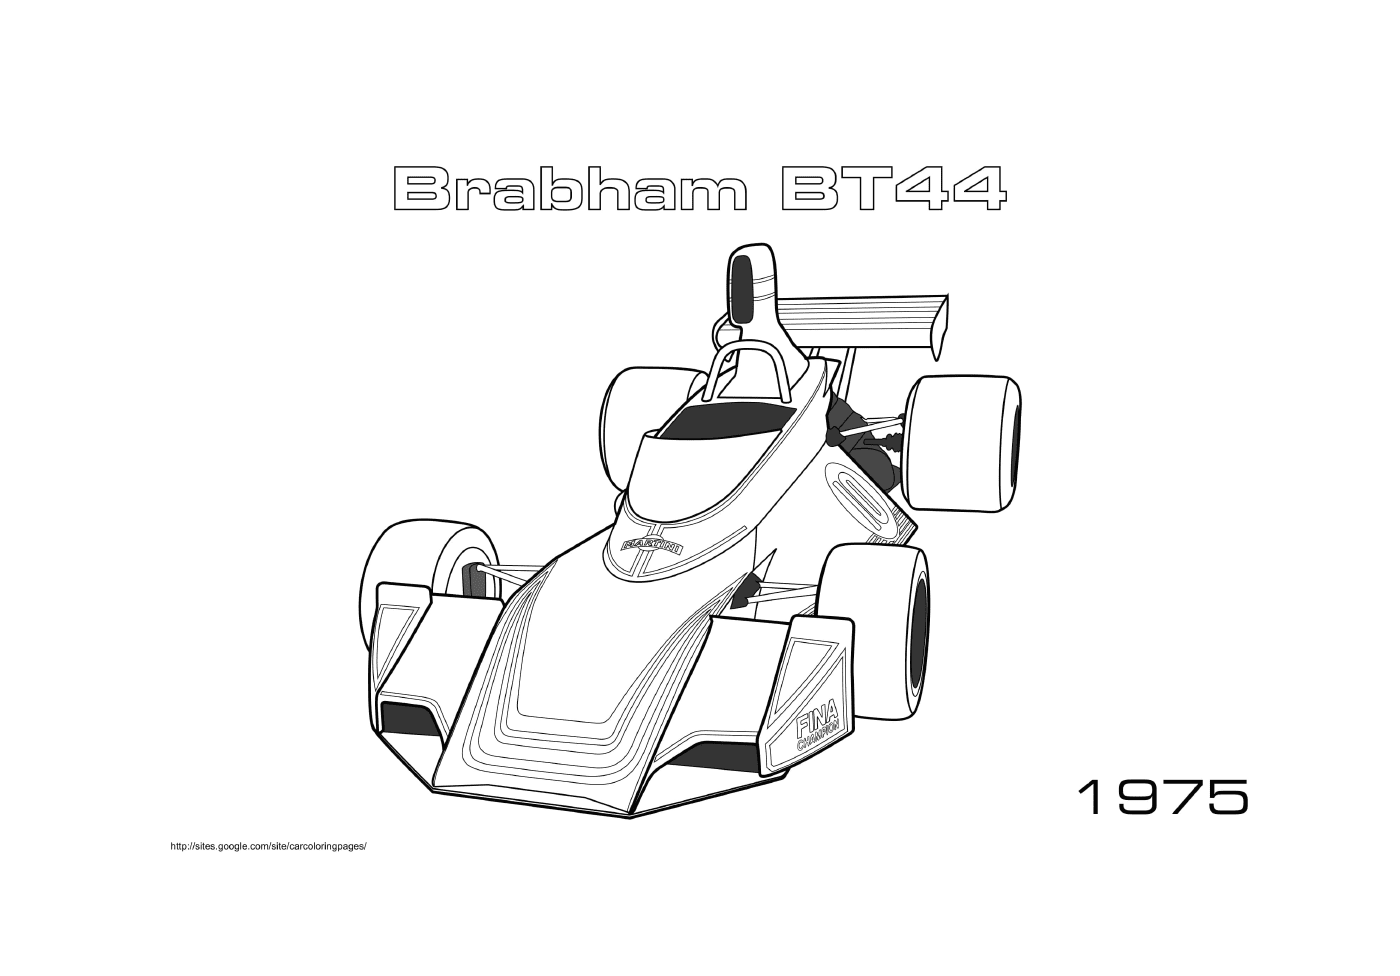  Brabham carro de corrida Bt44 1975 em ação 